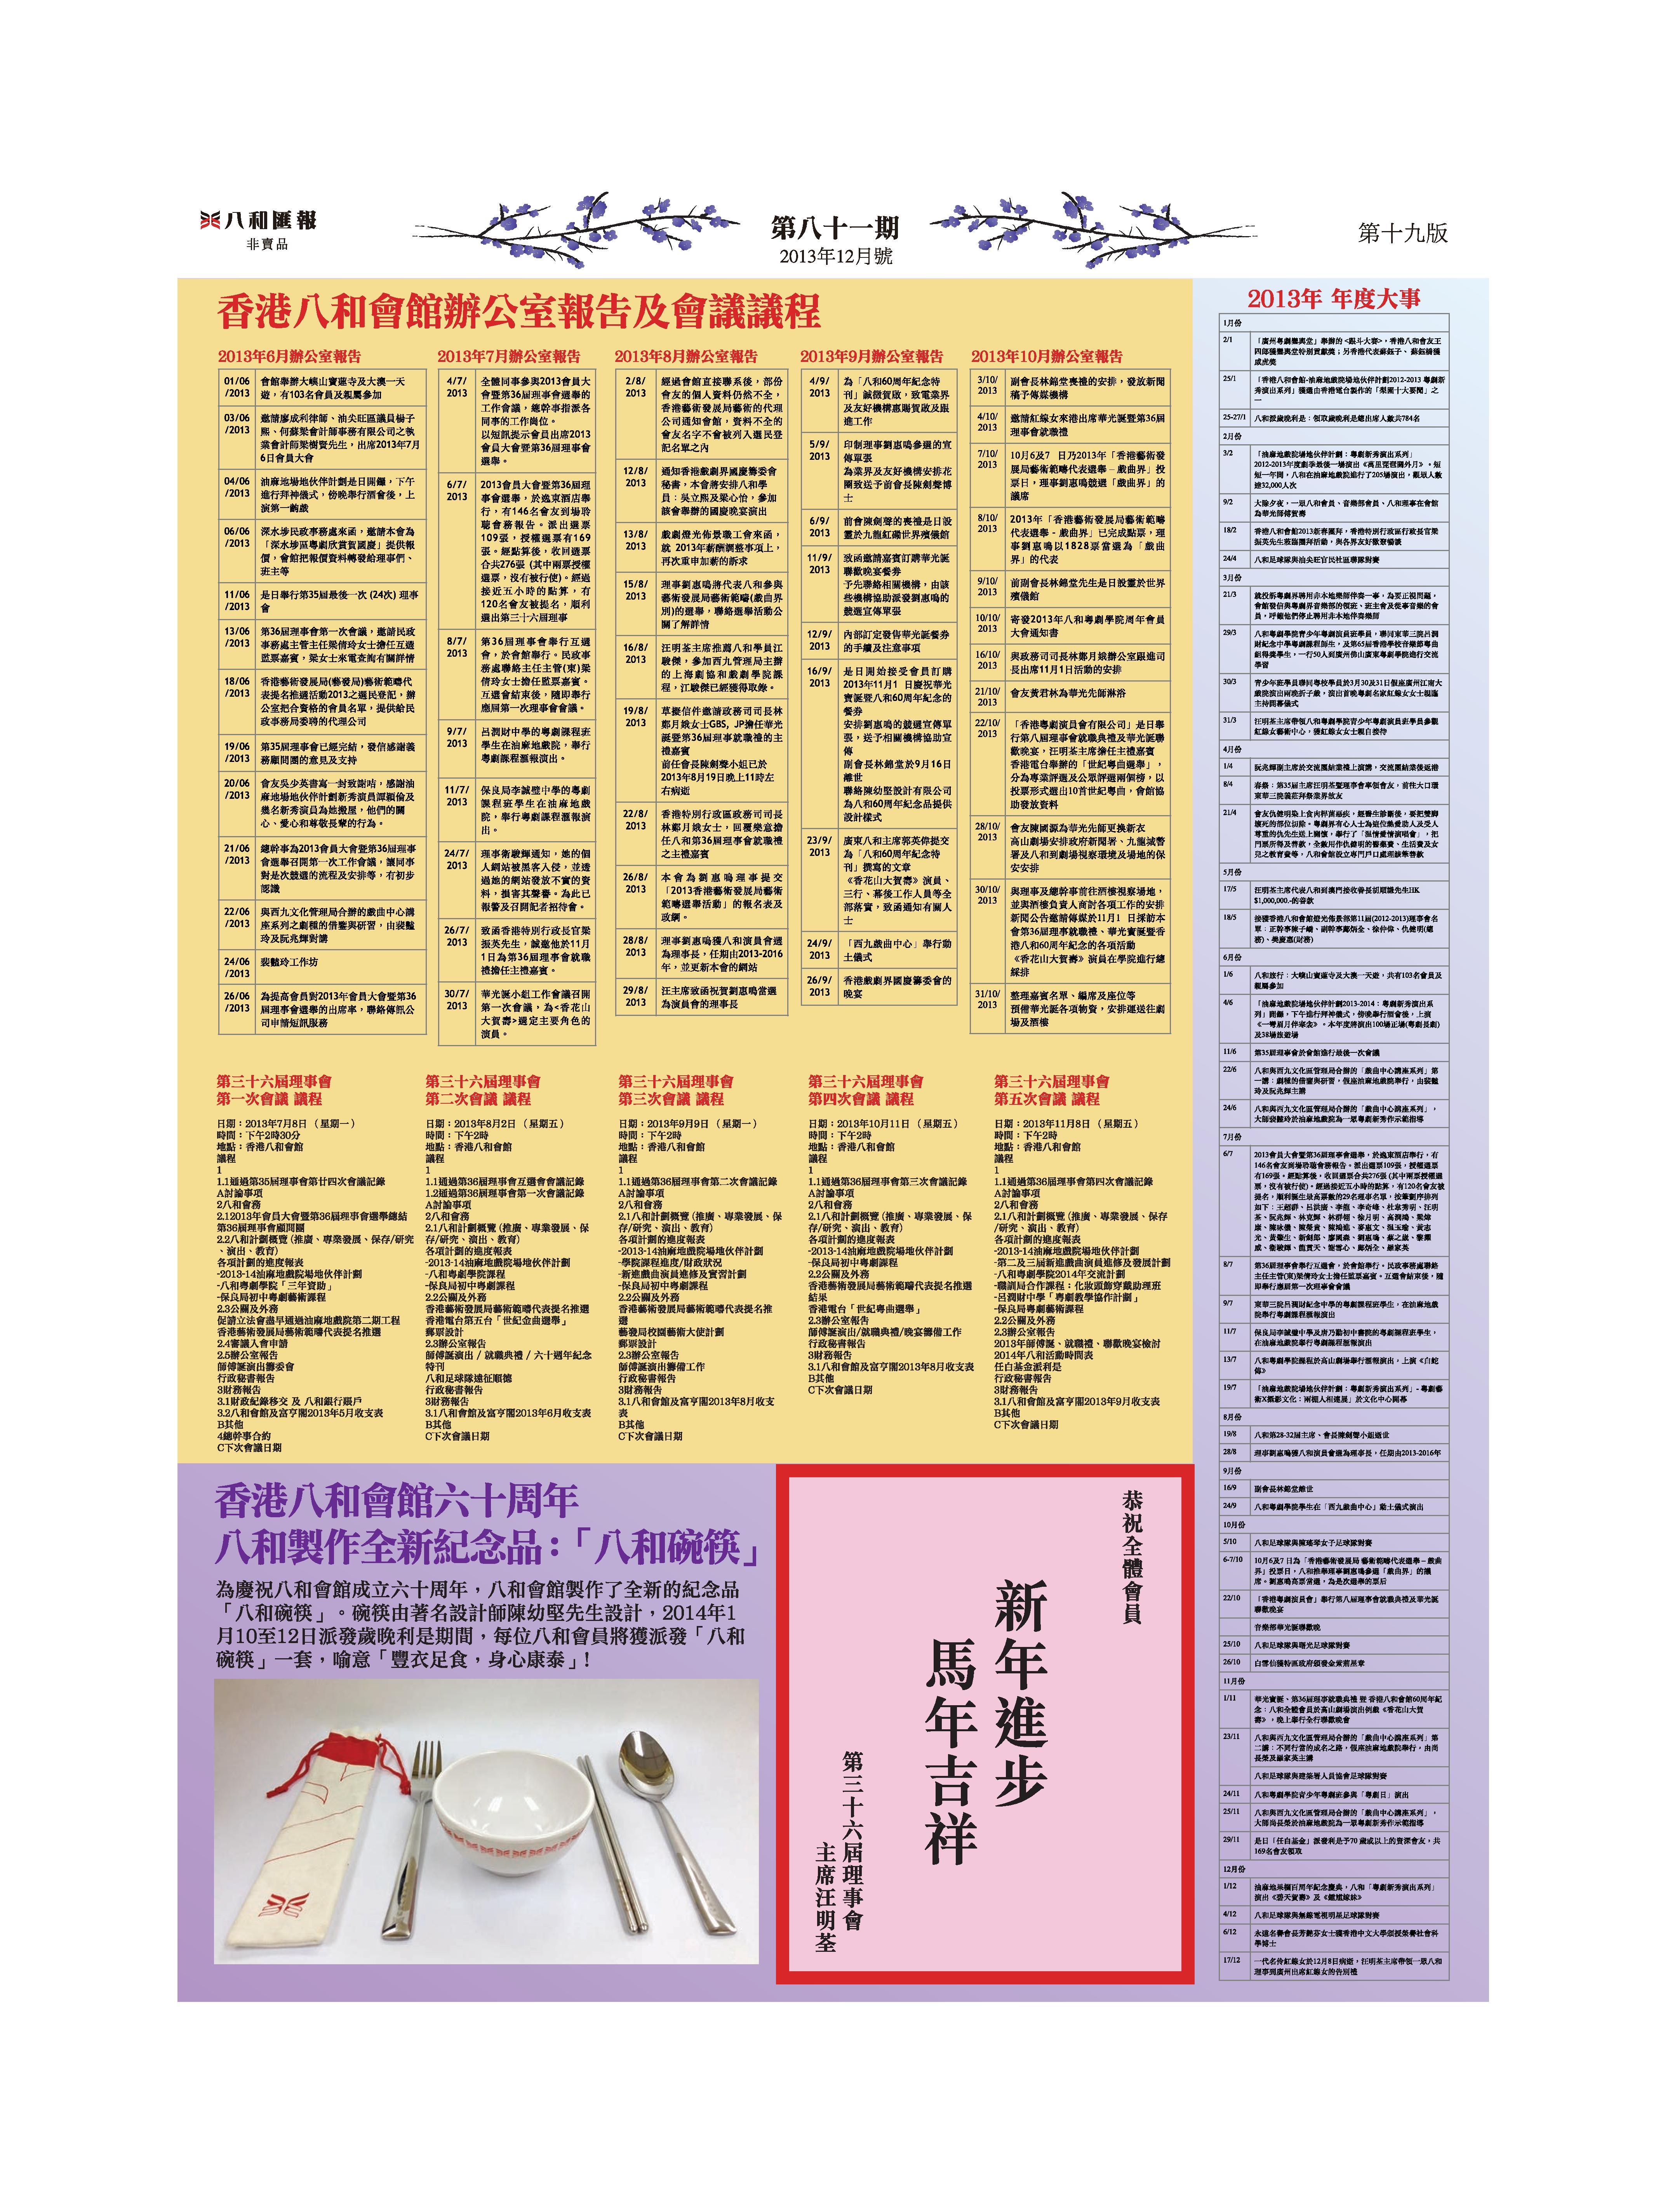 香港八和會館辦公室報告（2013年6月至10月）及第三十六屆理事會第一次至第五次會議議程 | 2013年八和年度大事 | 香港八和會館六十周年—八和製作全紀念品：八和碗筷